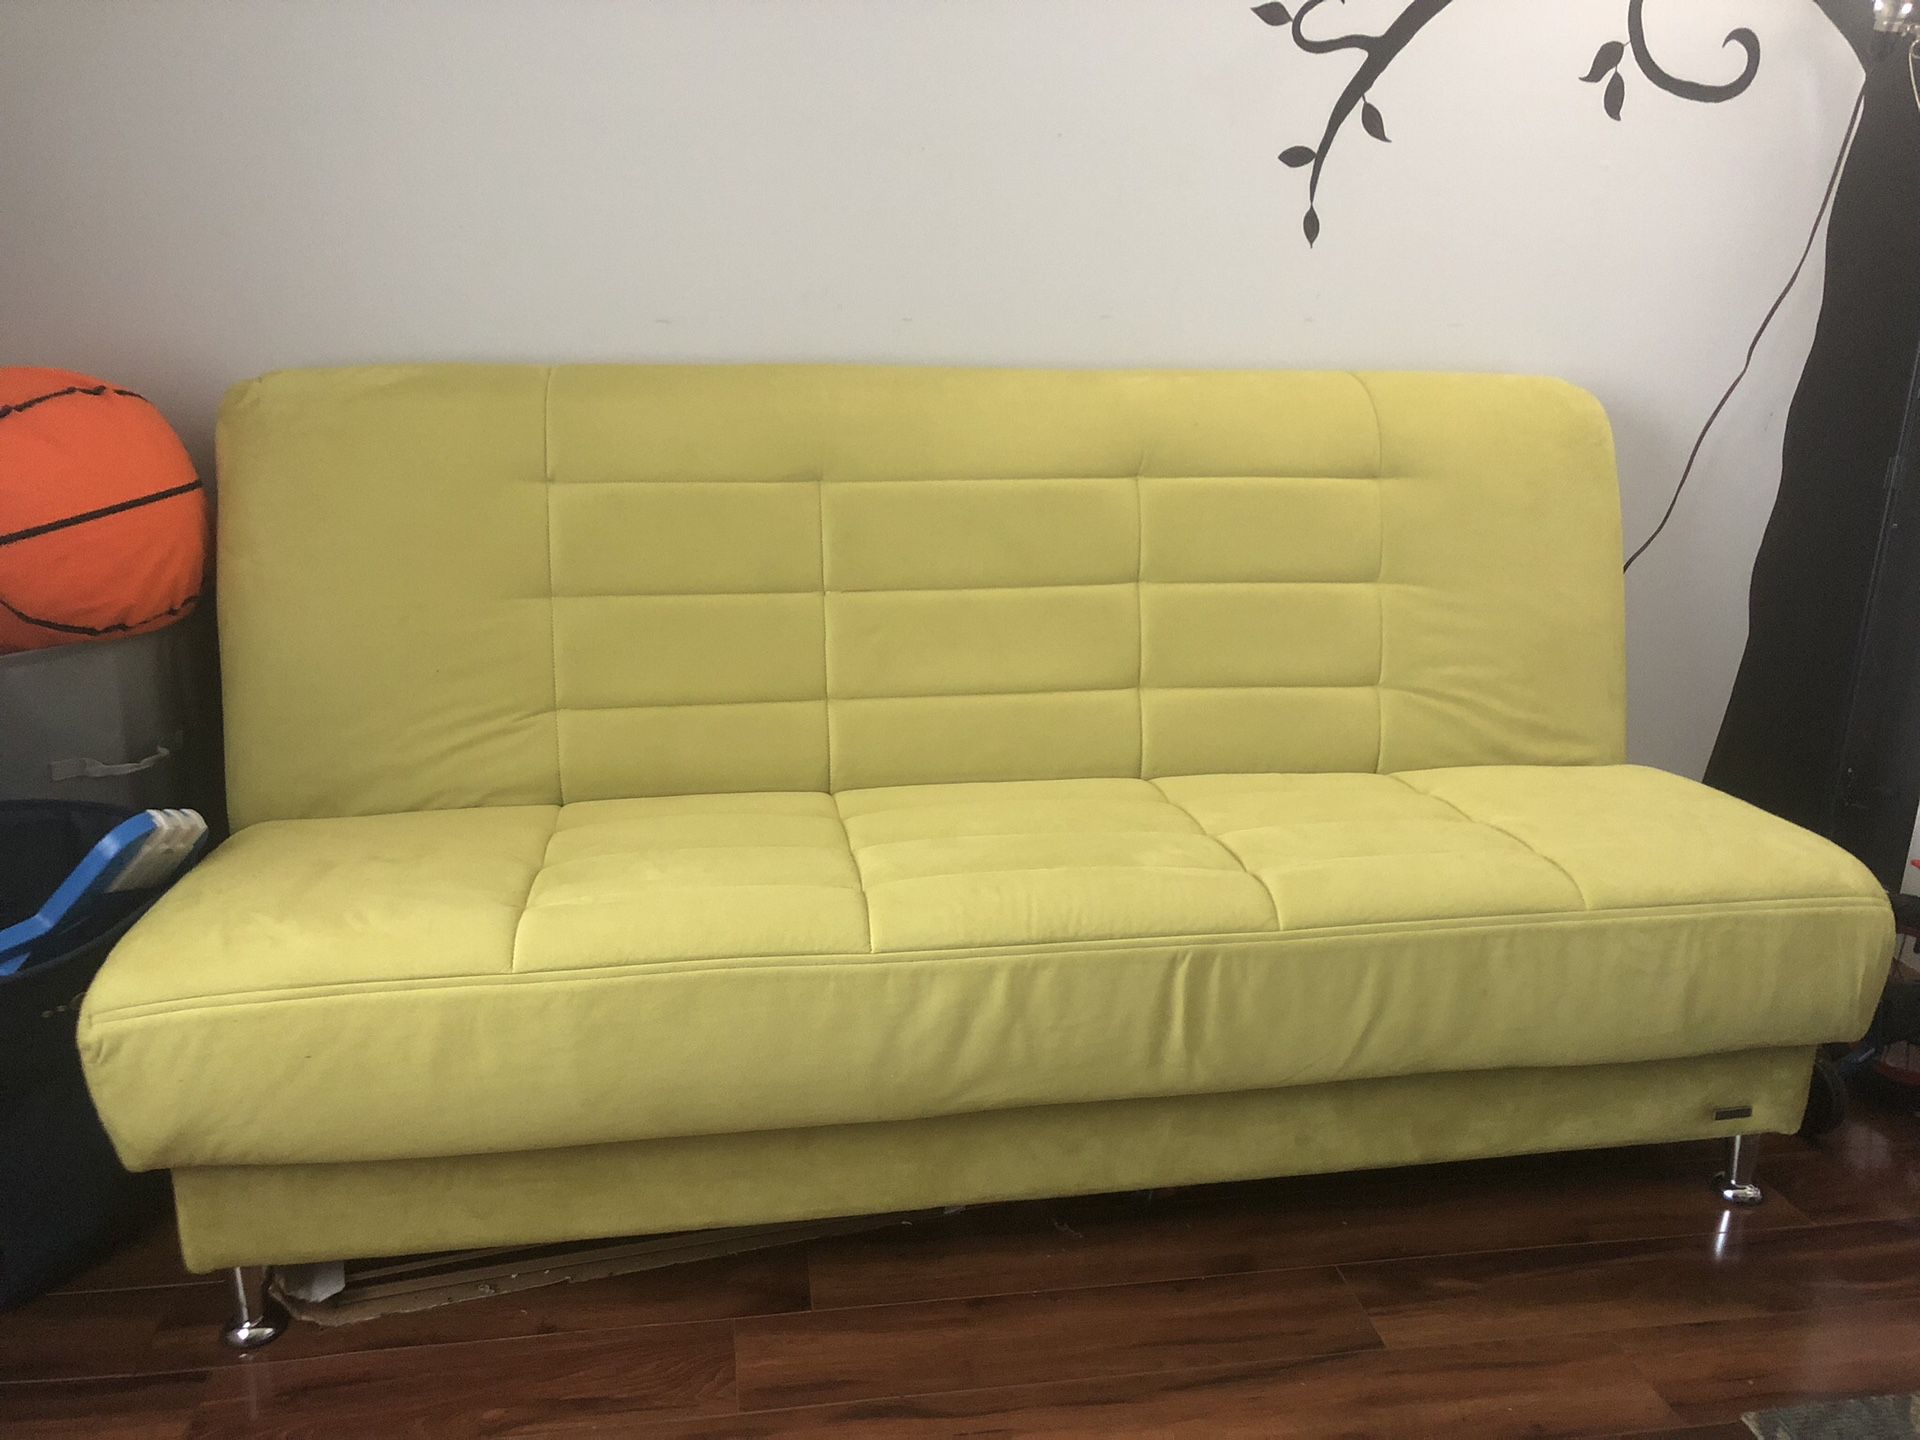 Green futon